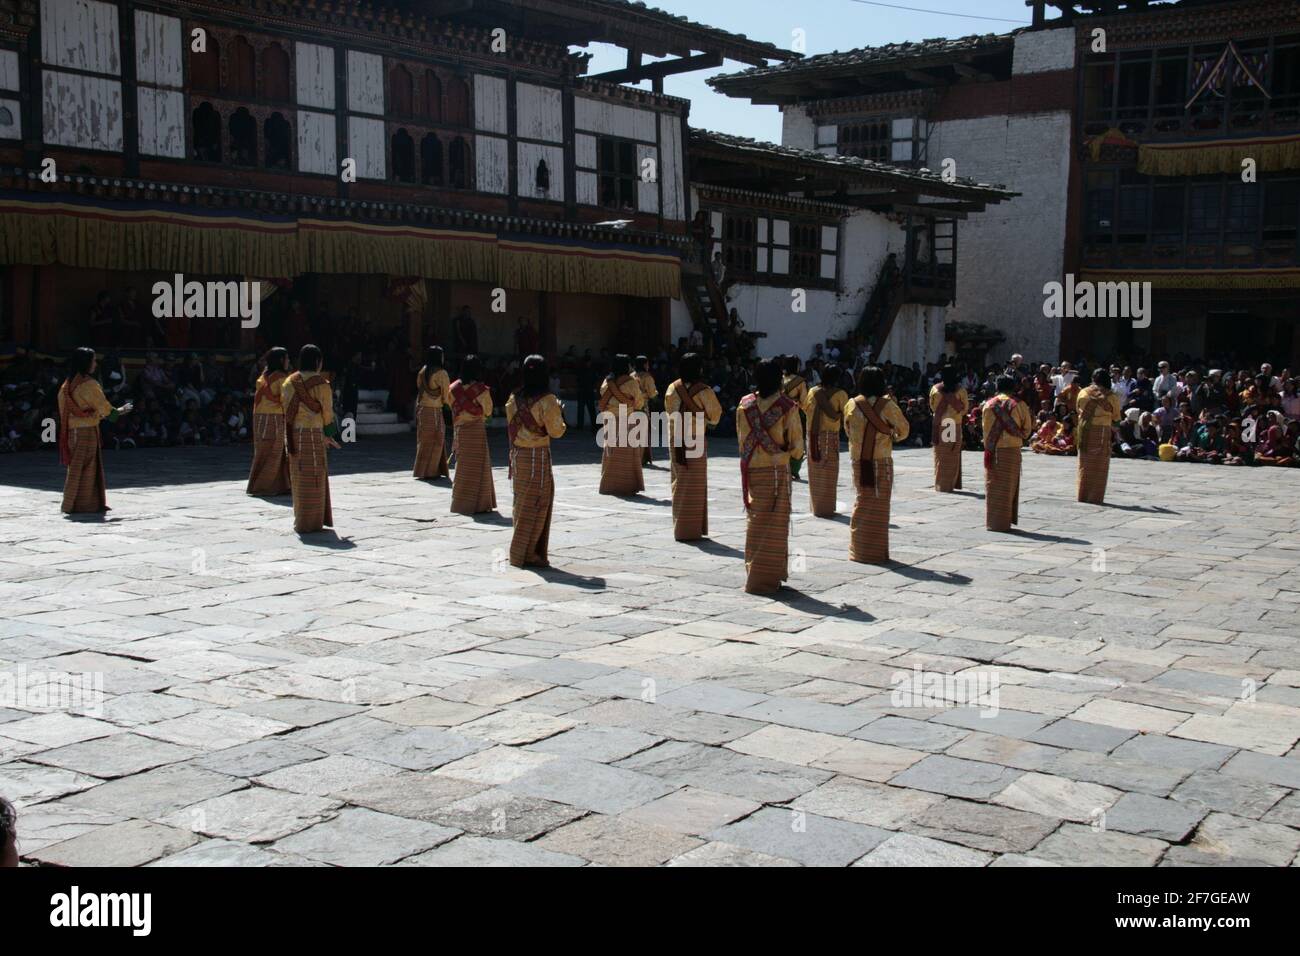 Tanz Tänzerinnen Maskerade Ball Parade Kloster Performance Frauen Tanzen Mit Masken Traditioneller Tanz Der Schöpfung Königreich Bhutan Himalaya Stockfoto